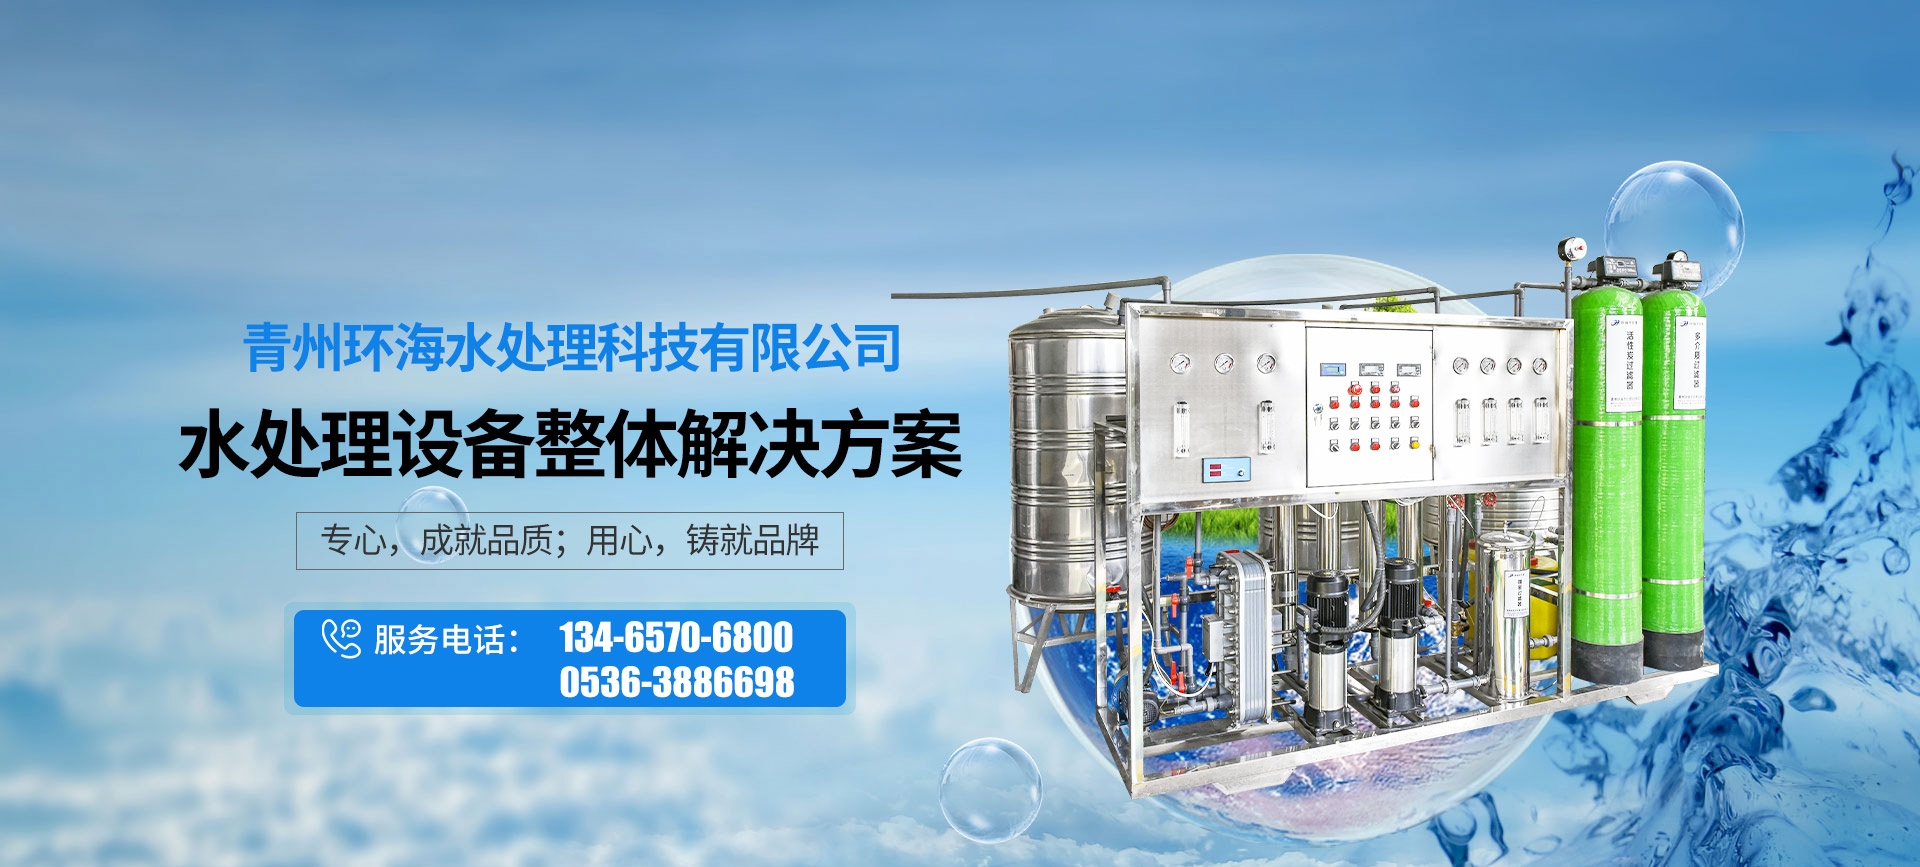 青州環海水處理科技有限公司